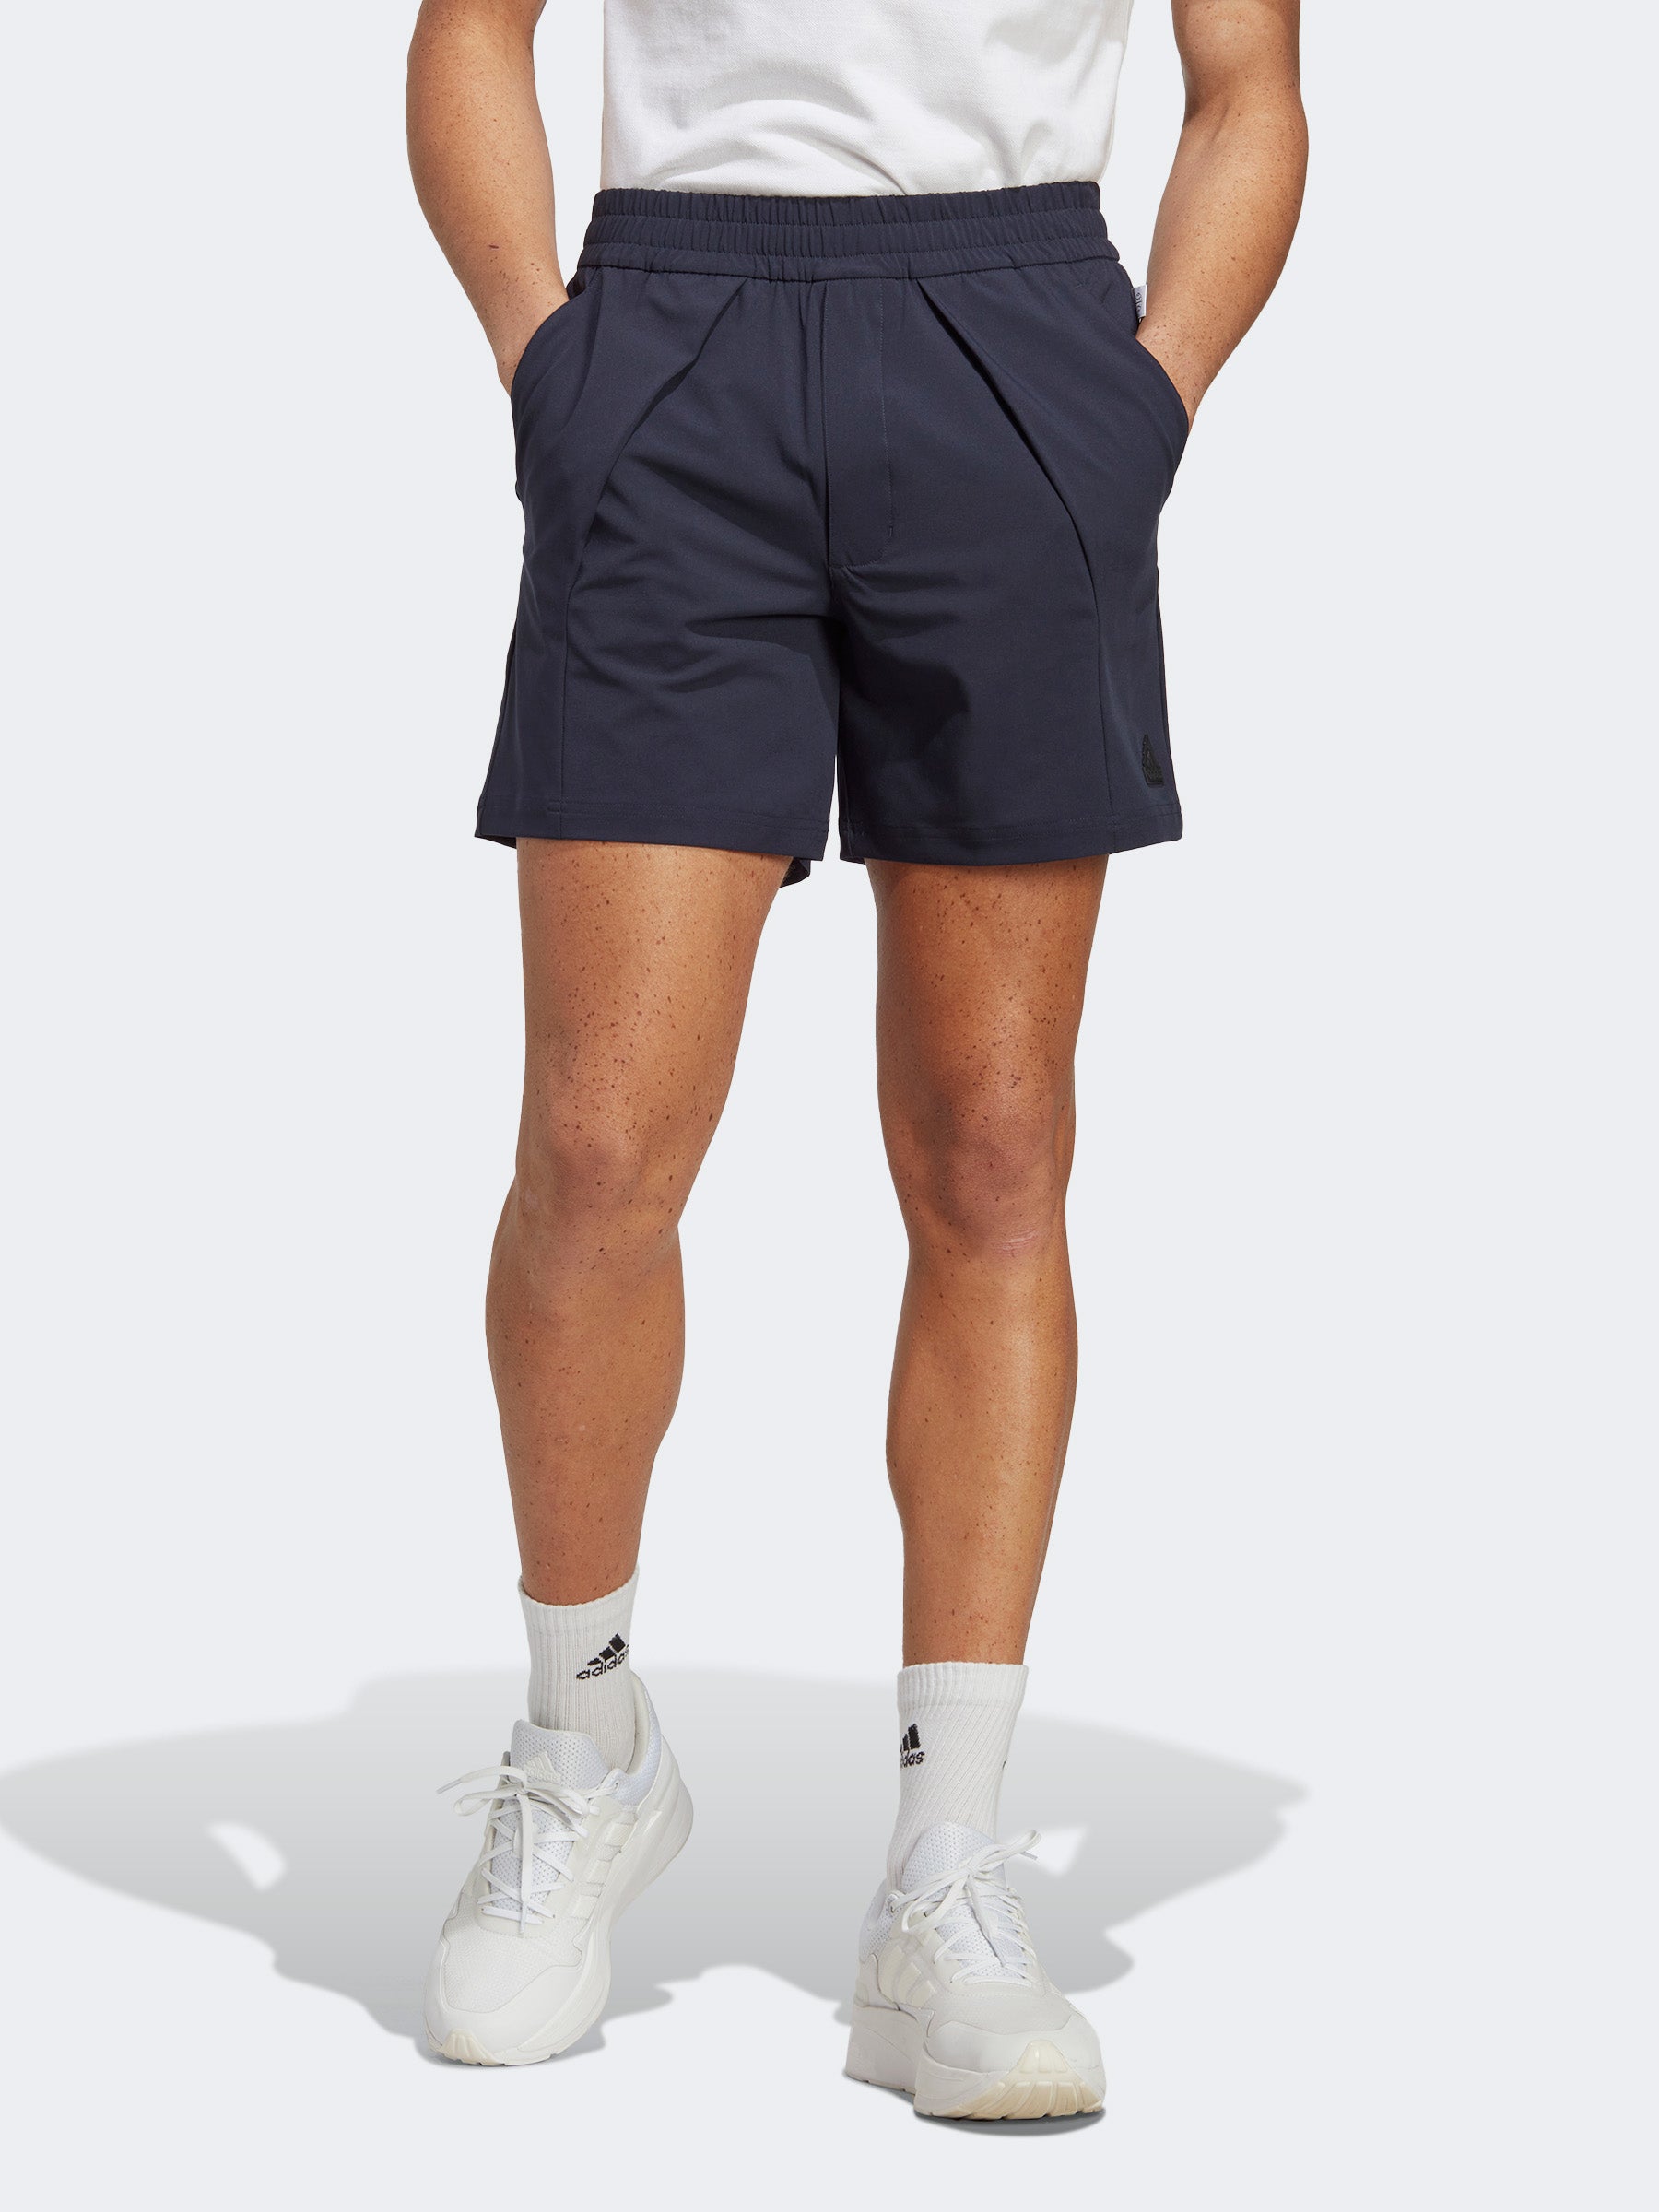 מכנסיים קצרים בשילוב קפלים- adidas performance|אדידס פרפורמנס